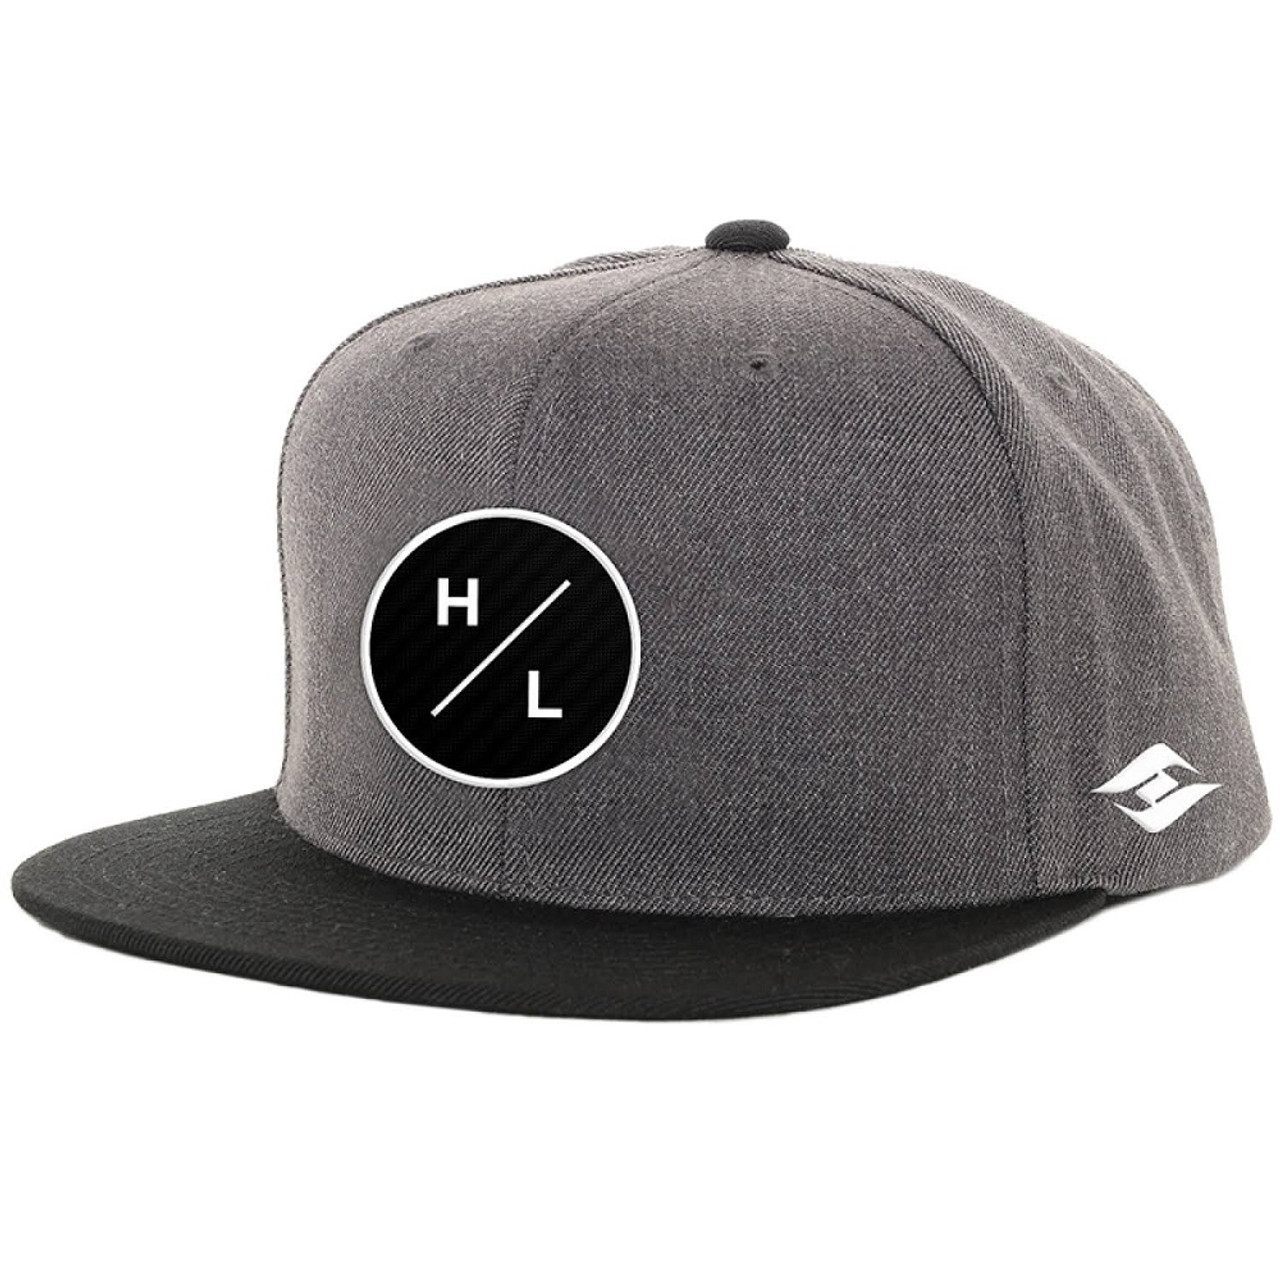 Hyperlite ICON Hat Grey Black Snapback